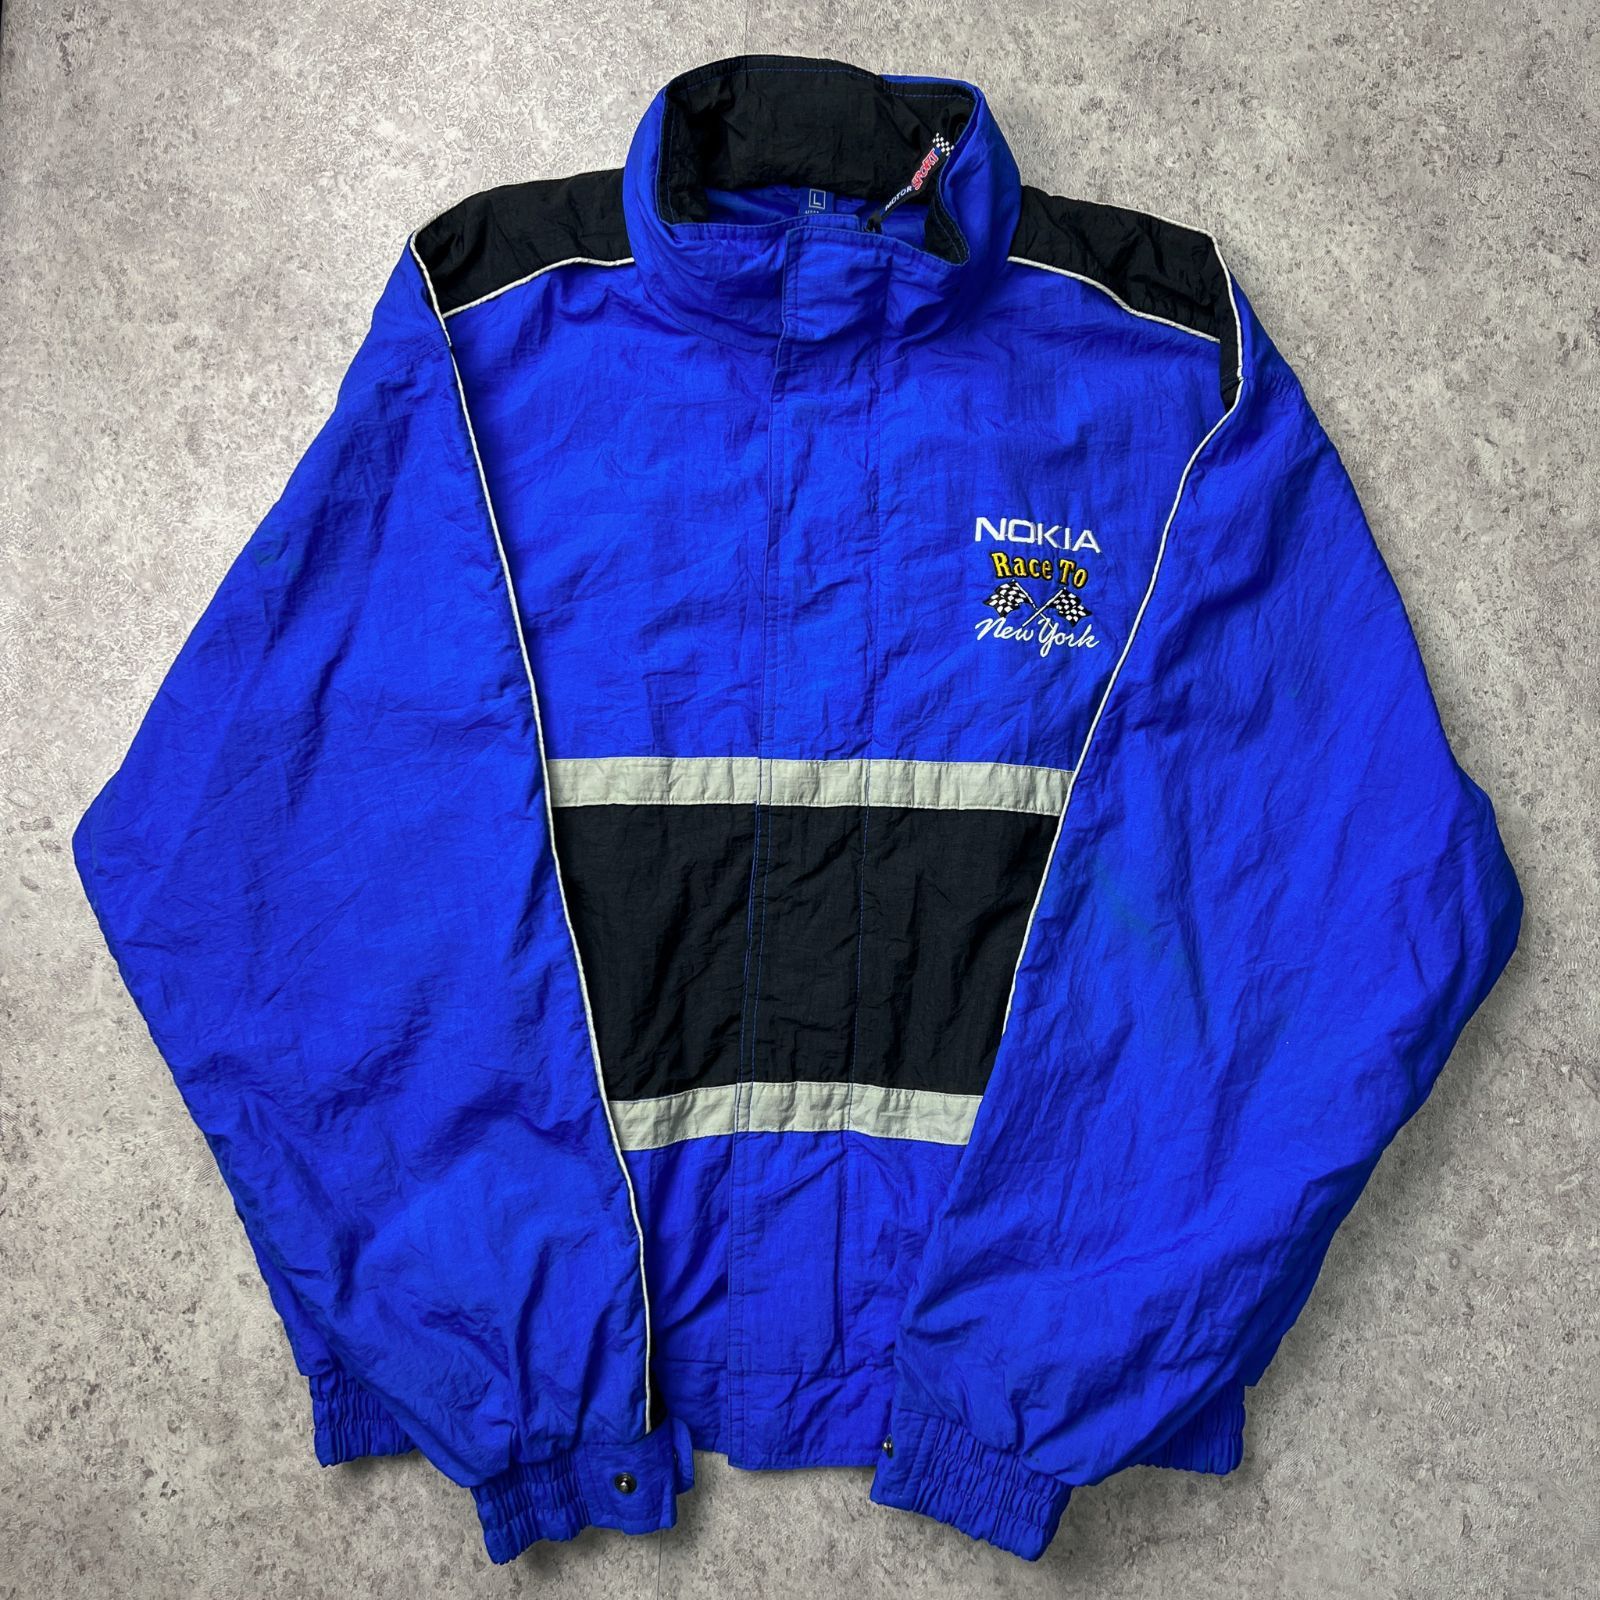 NOKIA ノキア レーシングジャケット ナイロンジャケット 企業ロゴ 企業系 90s 90年代 ビッグシルエット オーバーサイズ ボックスシルエット